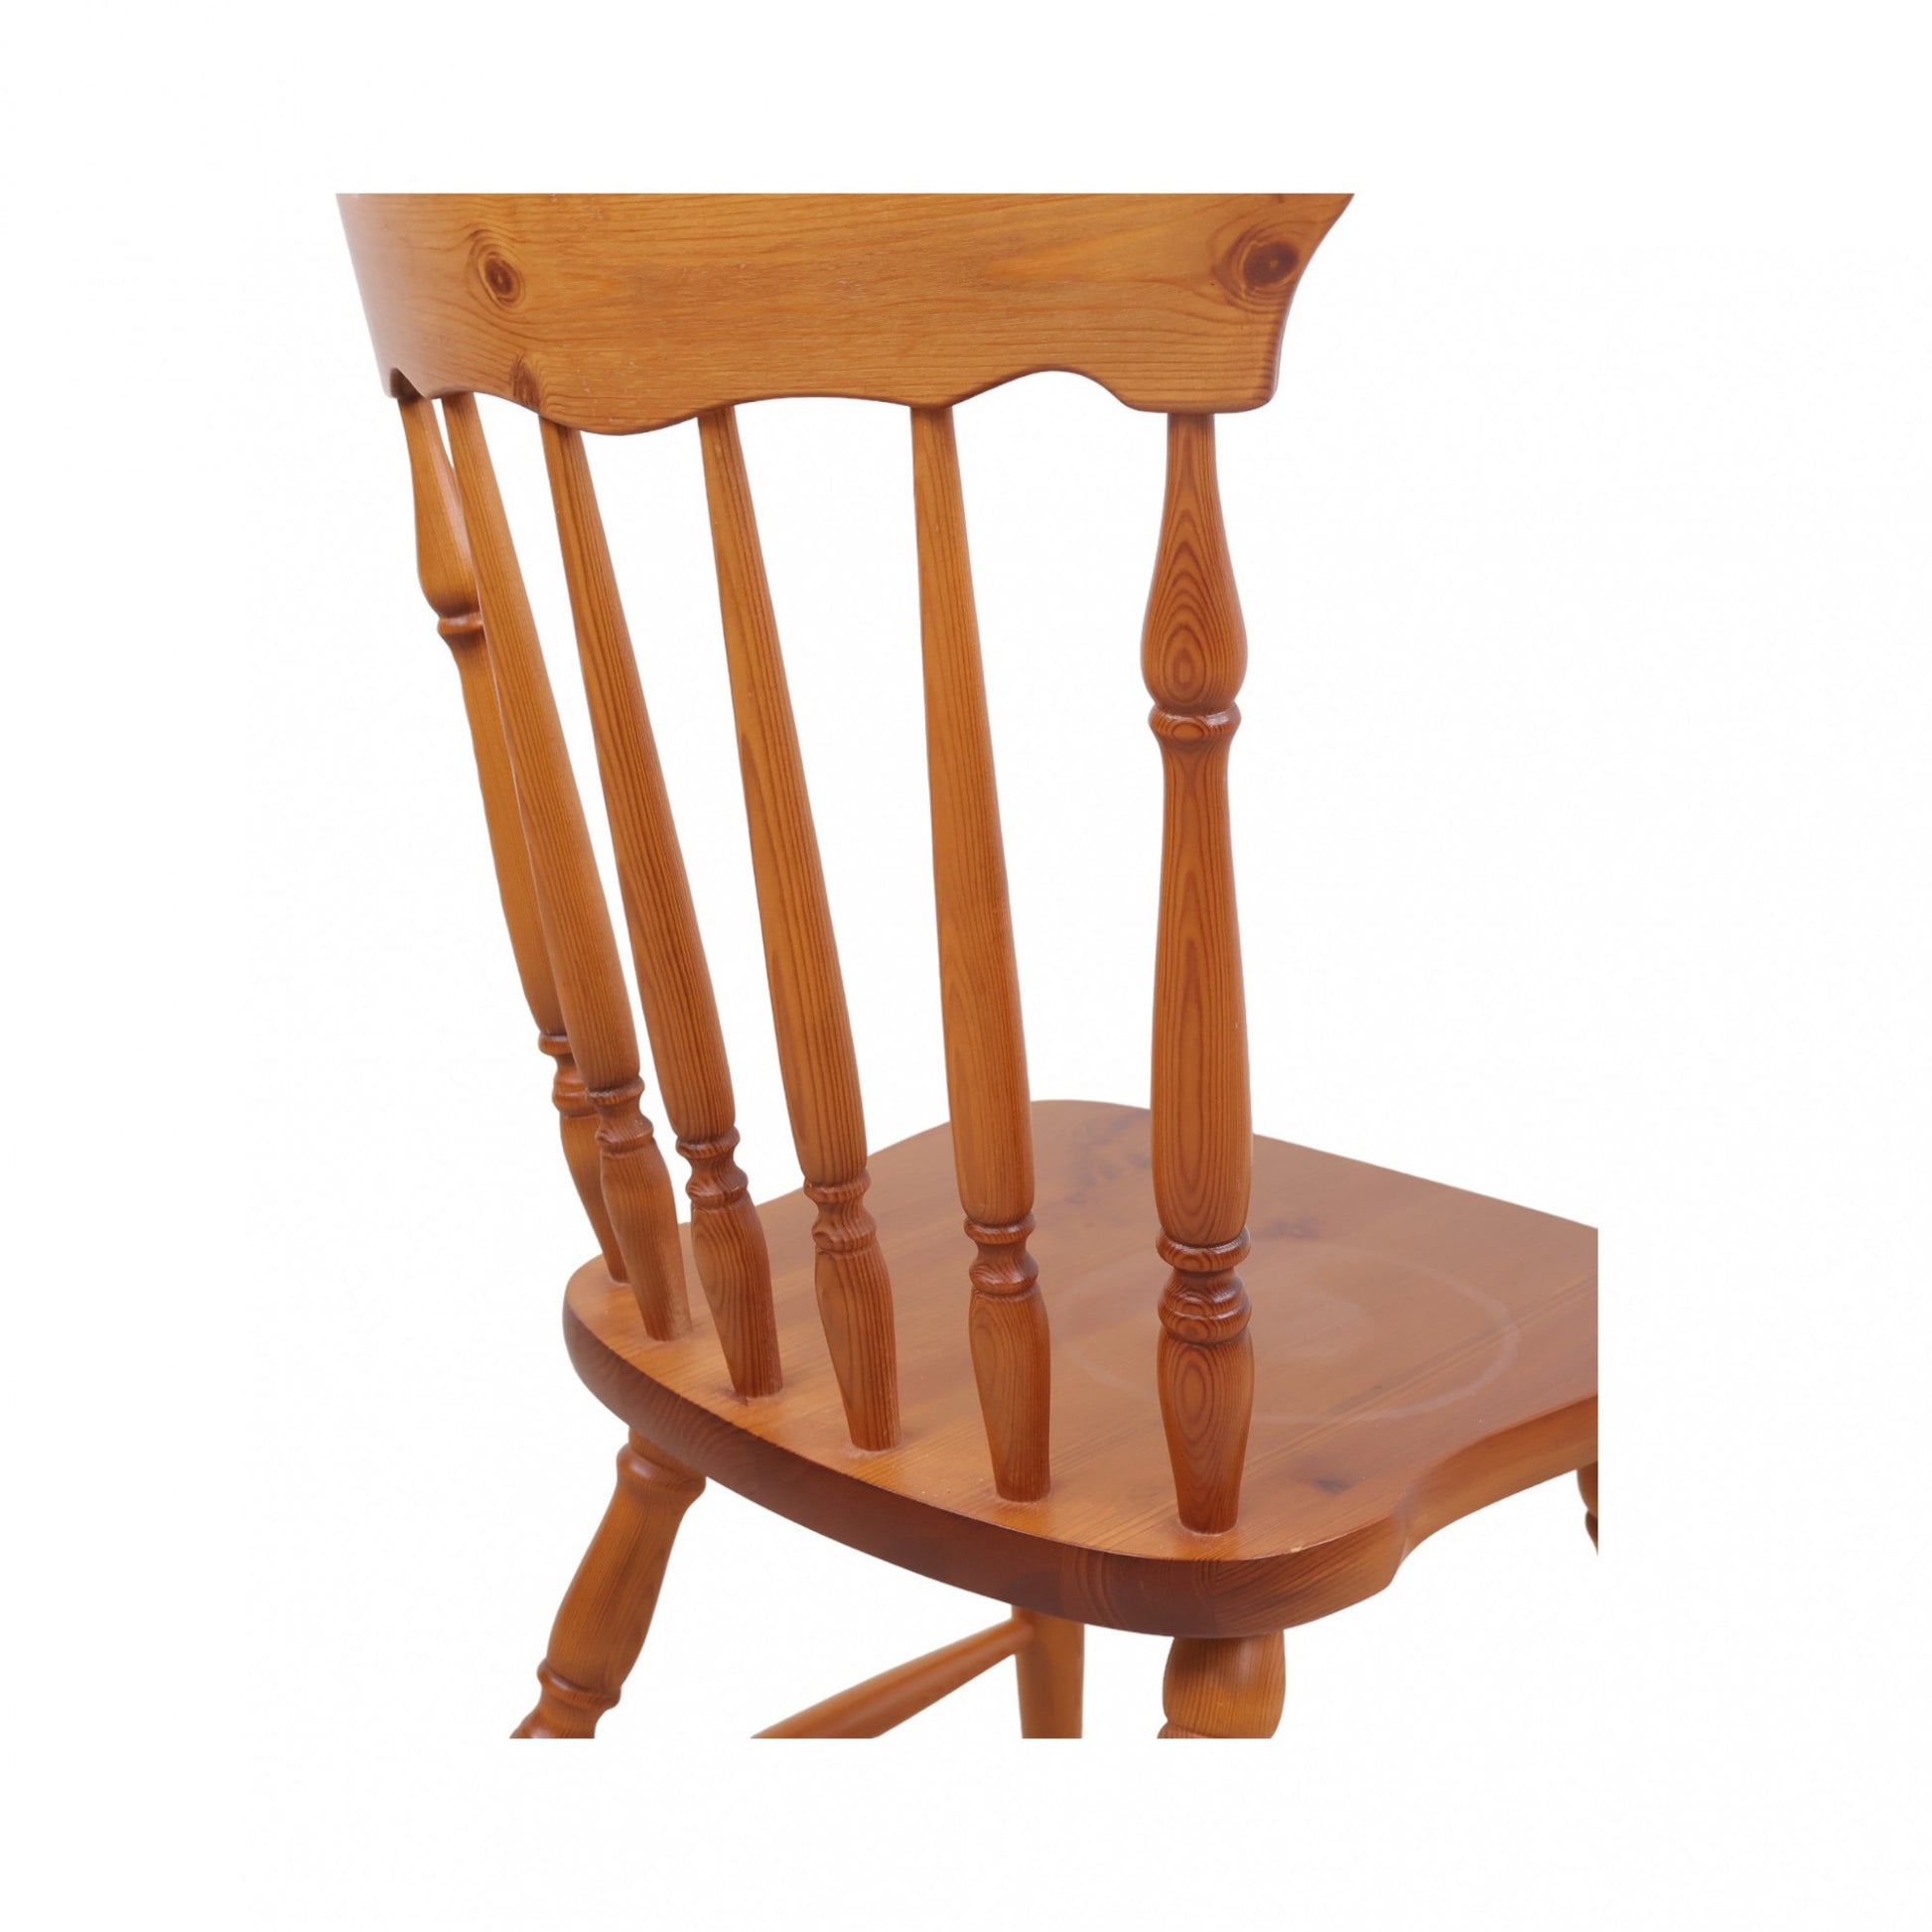 Tradisjonelt designet pinnestol av tre